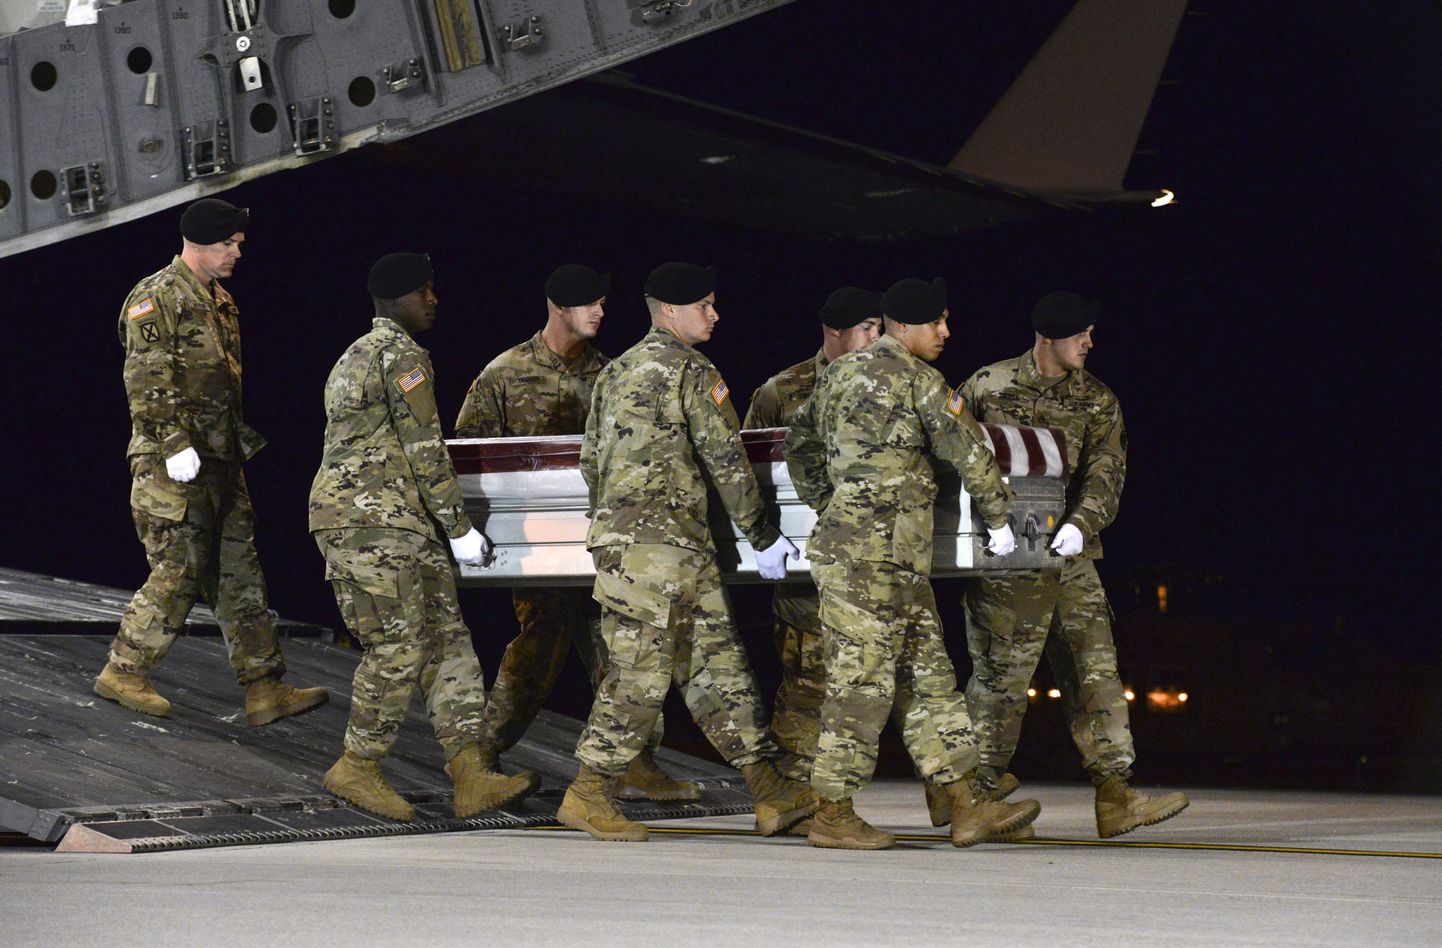 USA sõdur Dustin Wrighti kirstu toomine Ühendriikidesse.